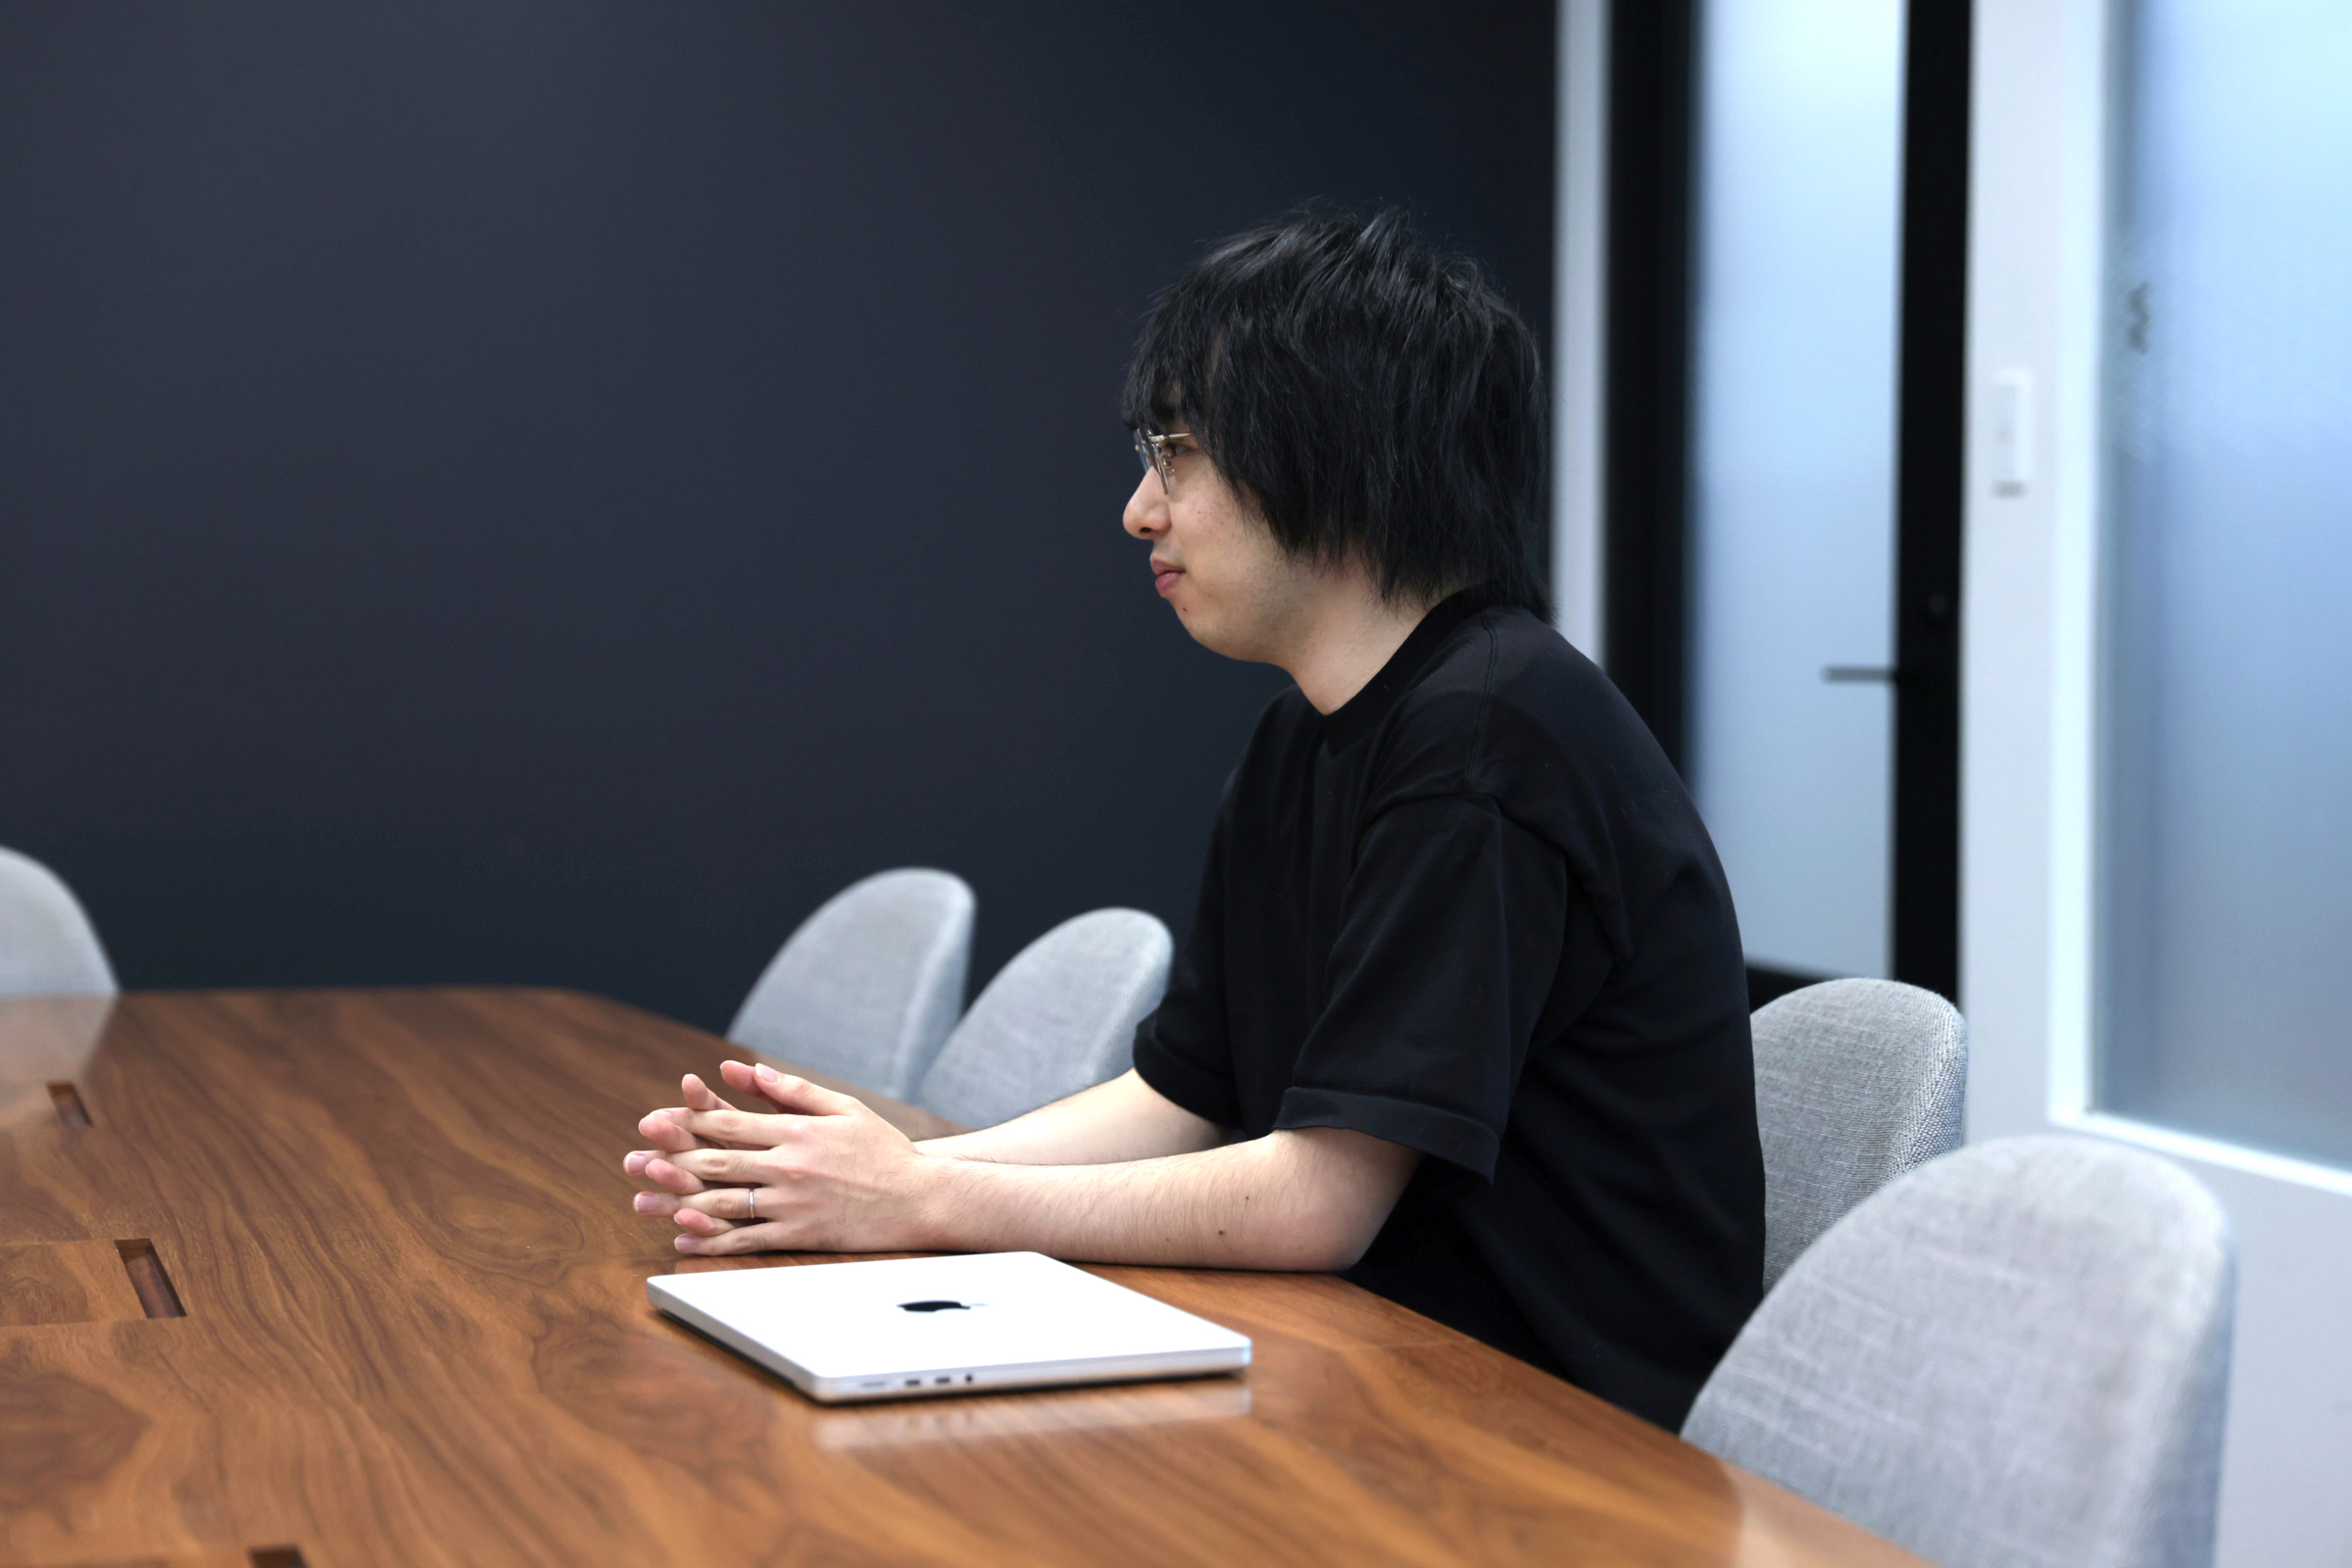 鈴木が椅子に座り、自らの仕事について前向きに語る様子の写真